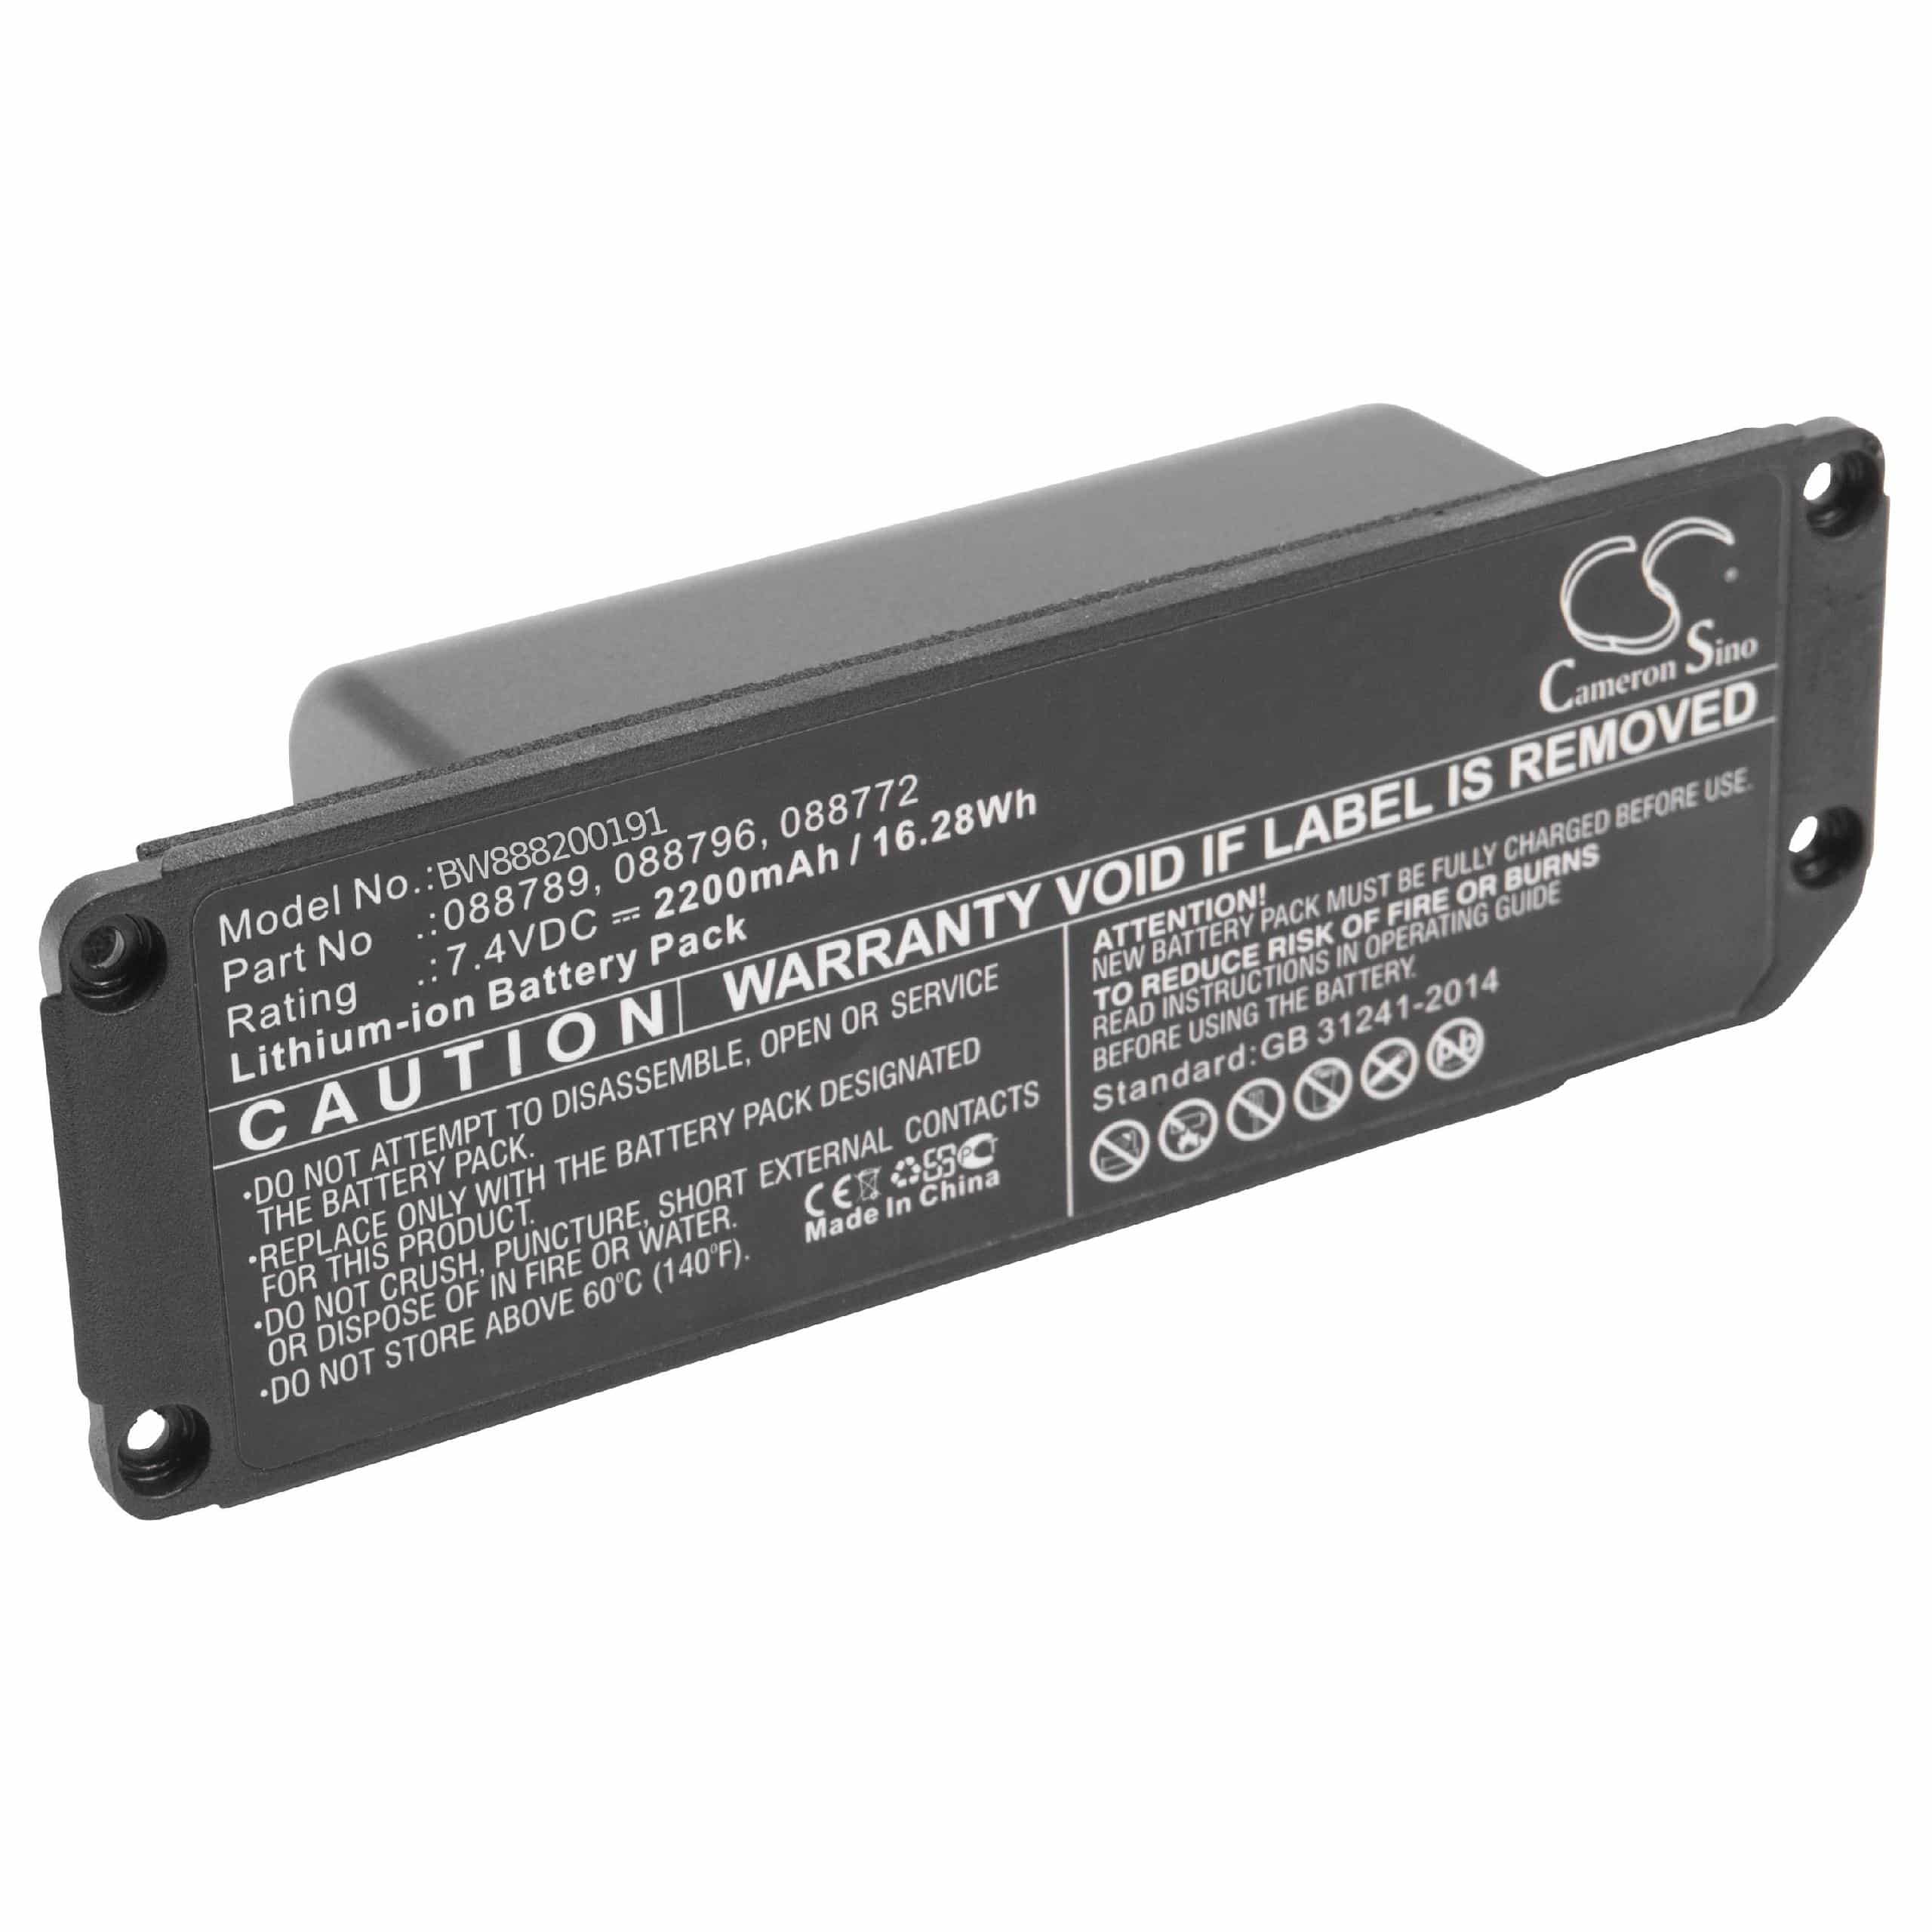 Batterie remplace Bose 088796, 088789, 088772, 080841 pour enceinte Bose - 2200mAh 7,4V Li-ion